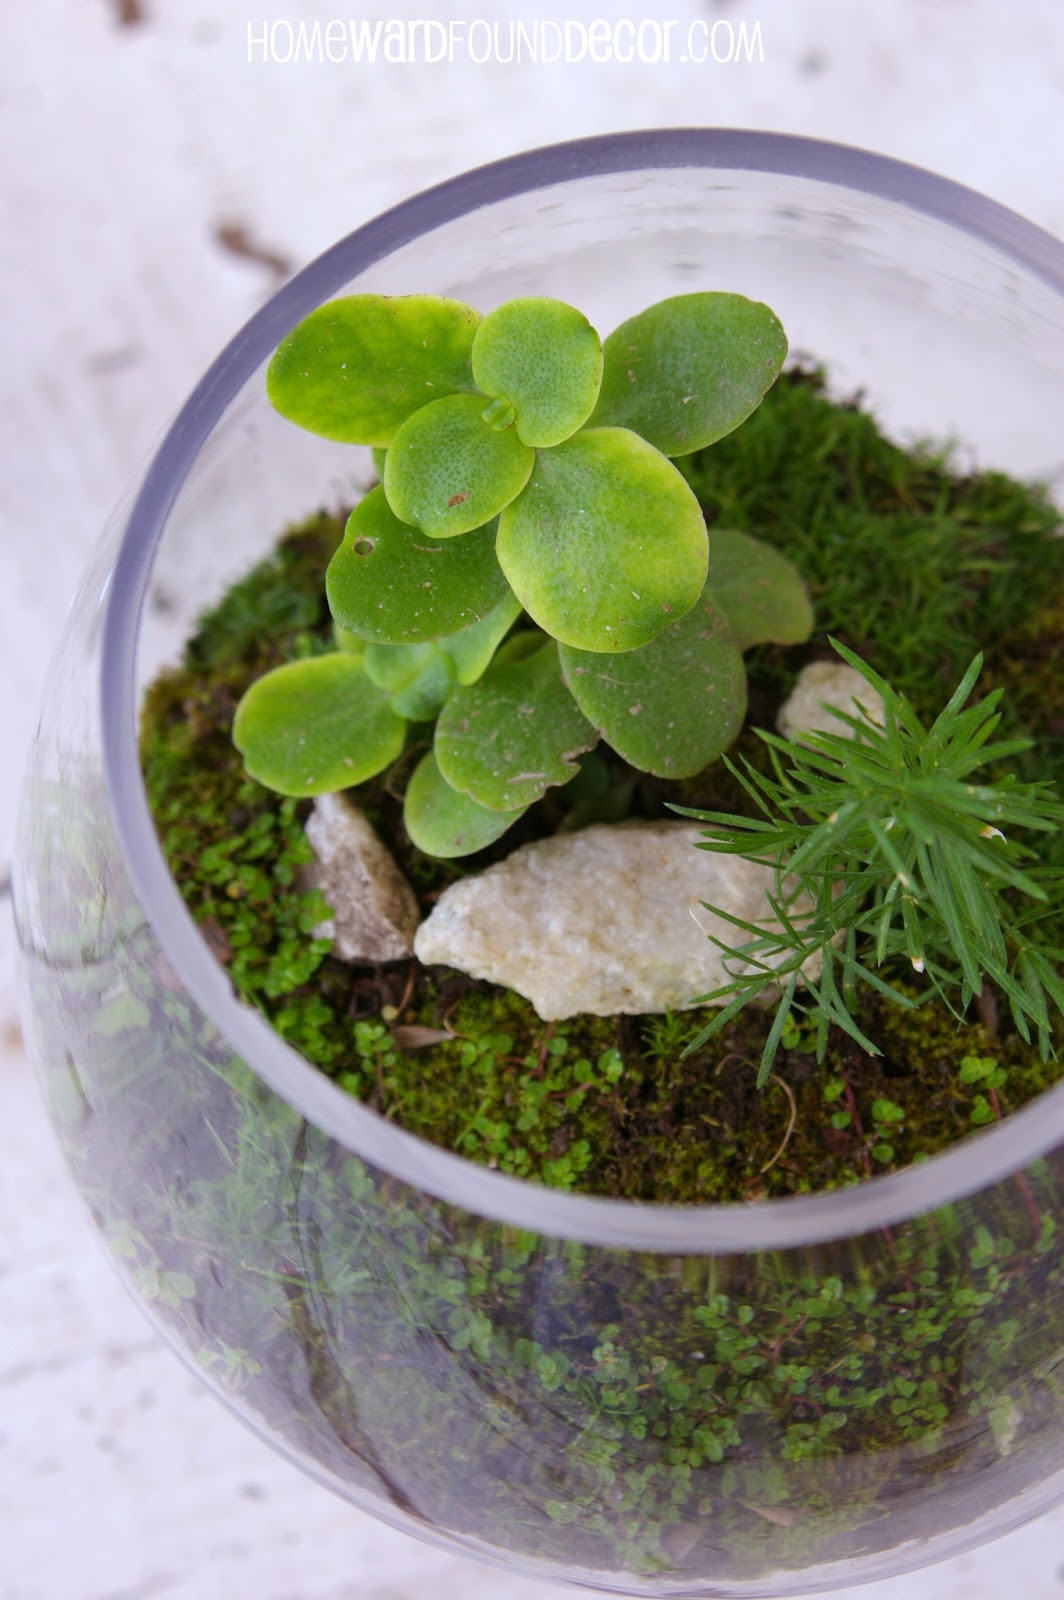 homeward found decor: How to Make a FREE Moss Terrarium